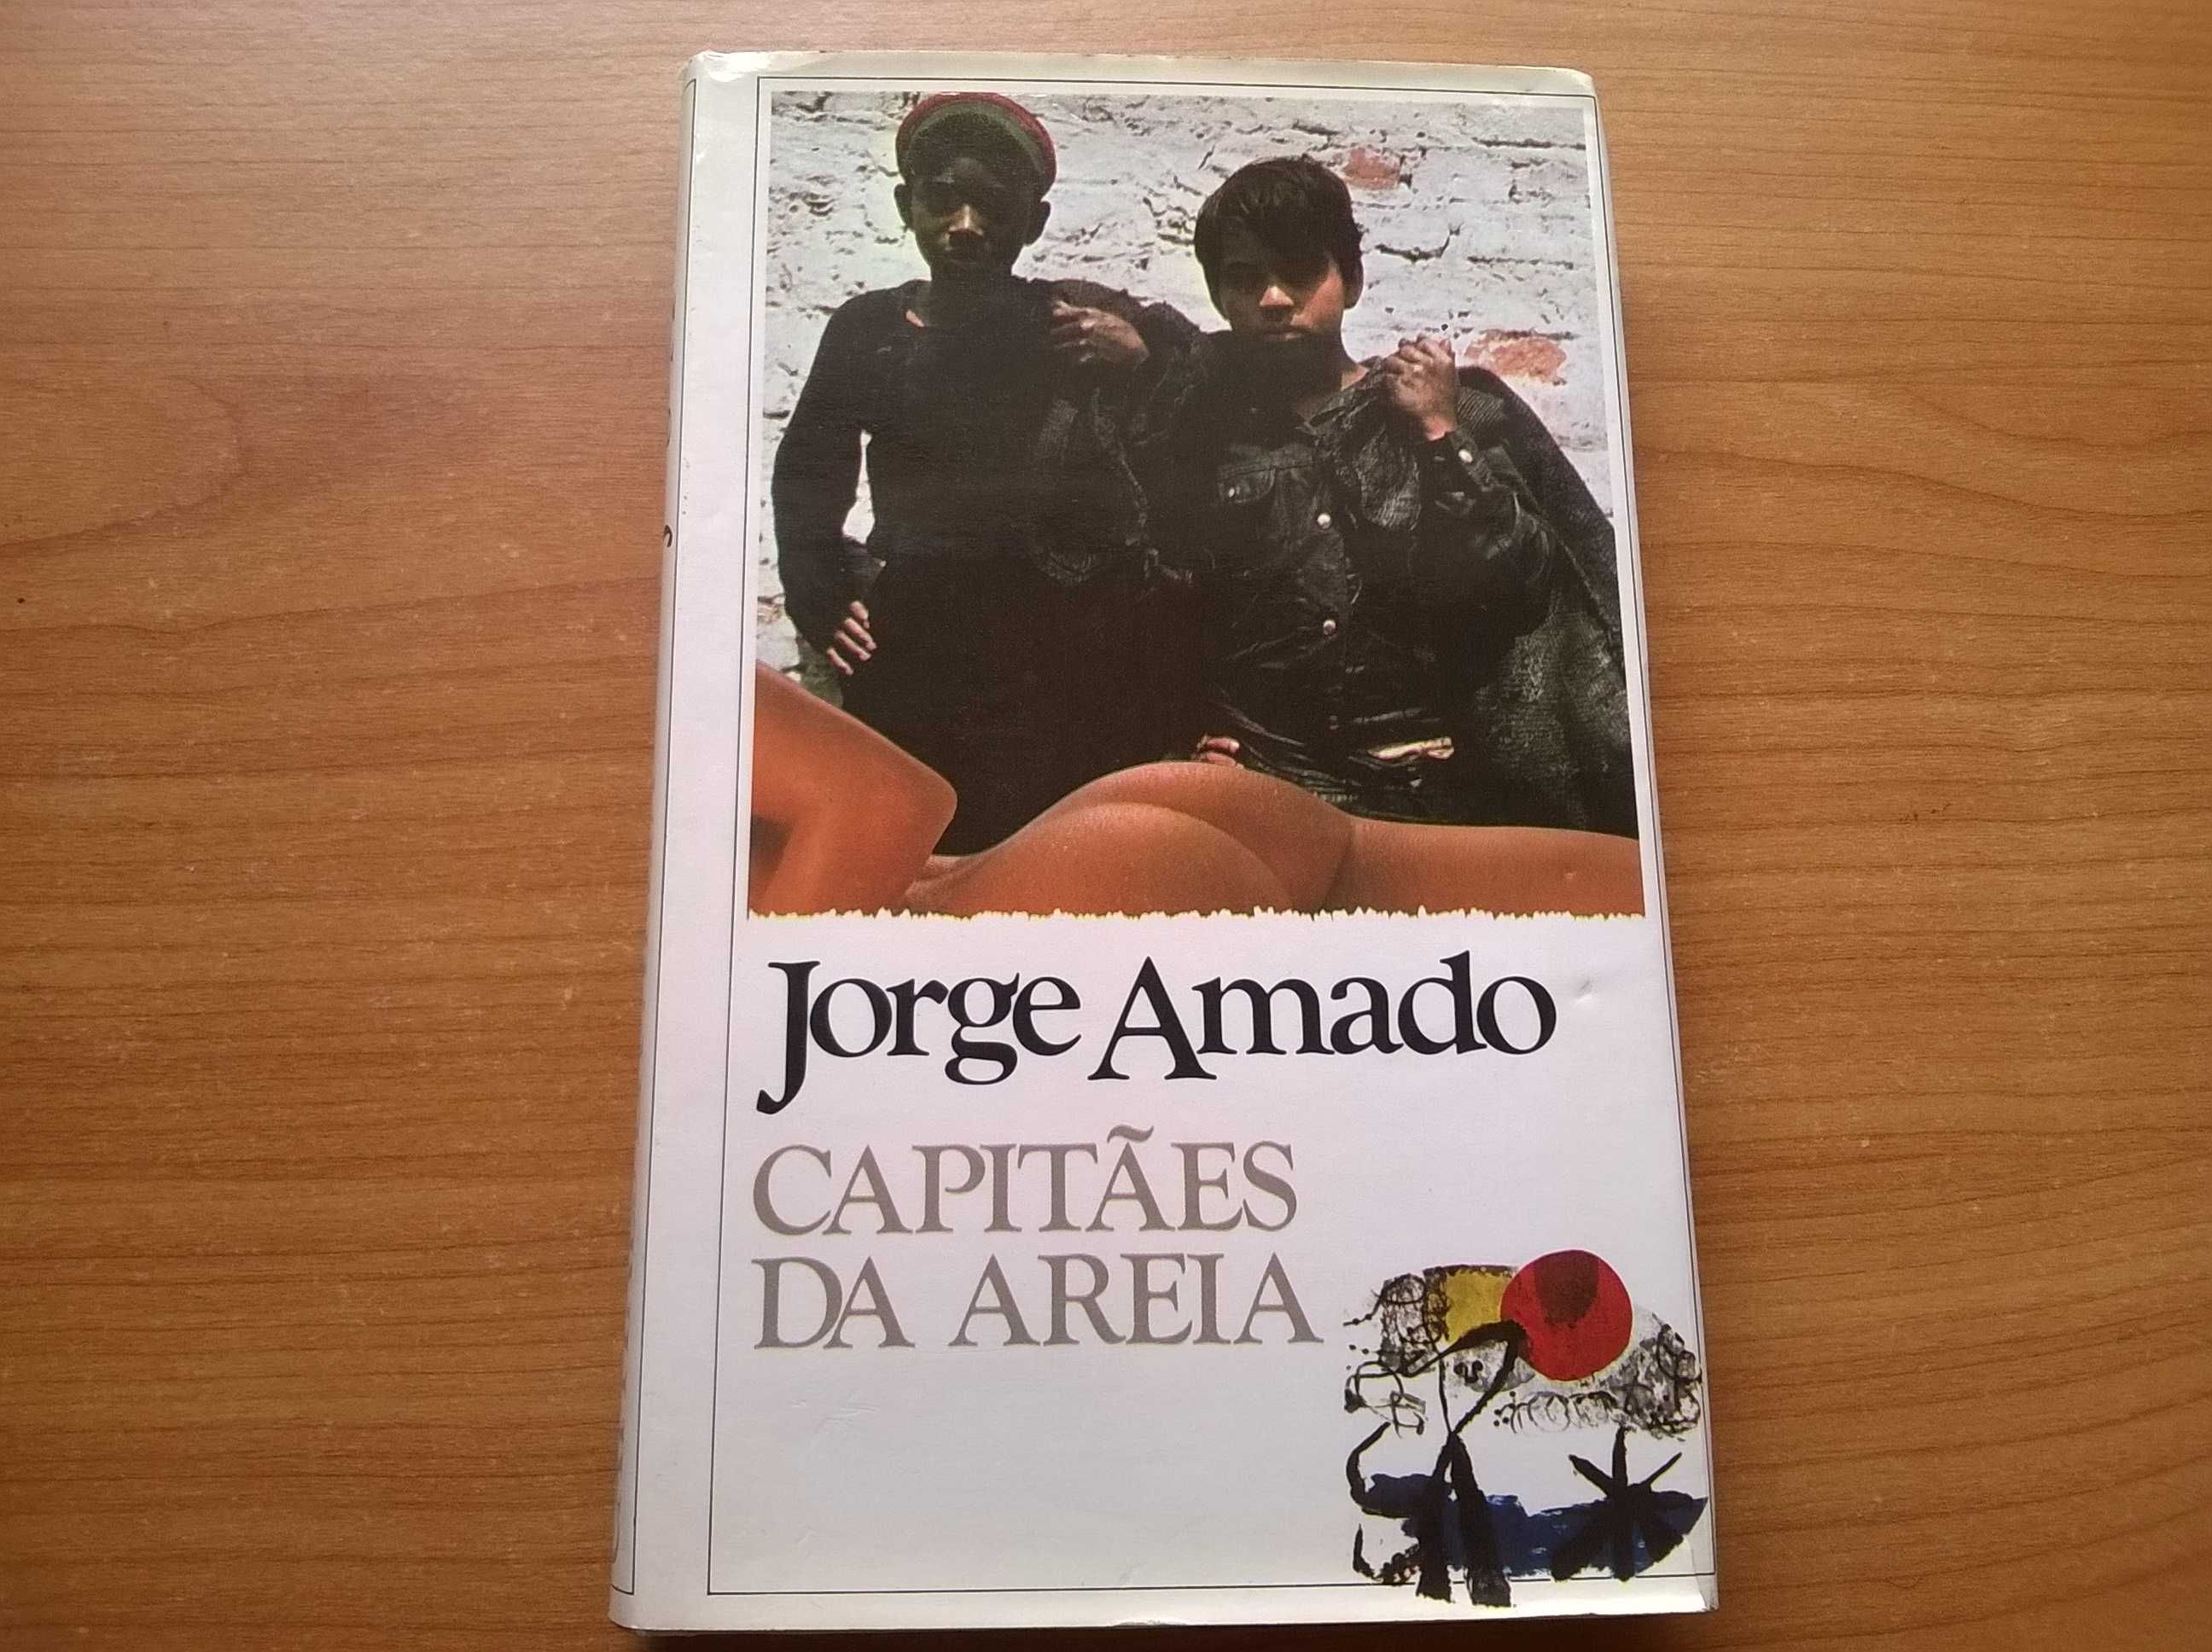 Capitães da Areia - Jorge Amado (portes grátis)